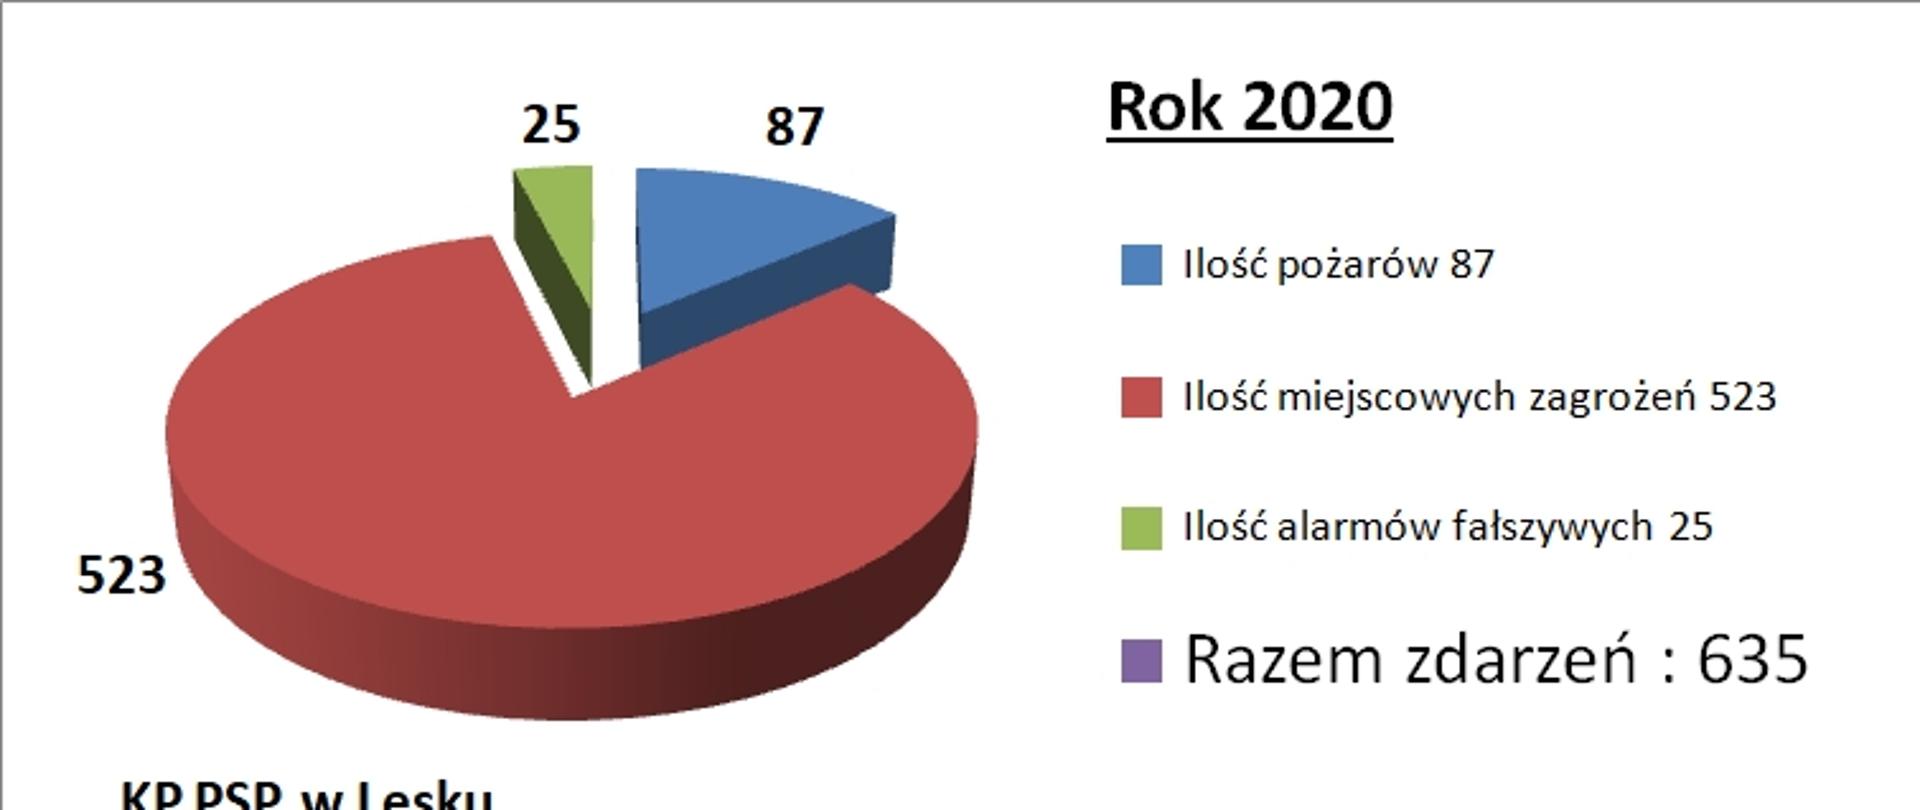 Zdjęcie przedstawia wykres kołowy statystyki interwencji KP PSP w Lesku. W 2020 r. w KP PSP Lesko łącznie odnotowano 635 zdarzeń, w tym 87 pożarów, 523 miejscowe zagrożenia oraz 25 alarmów fałszywych.